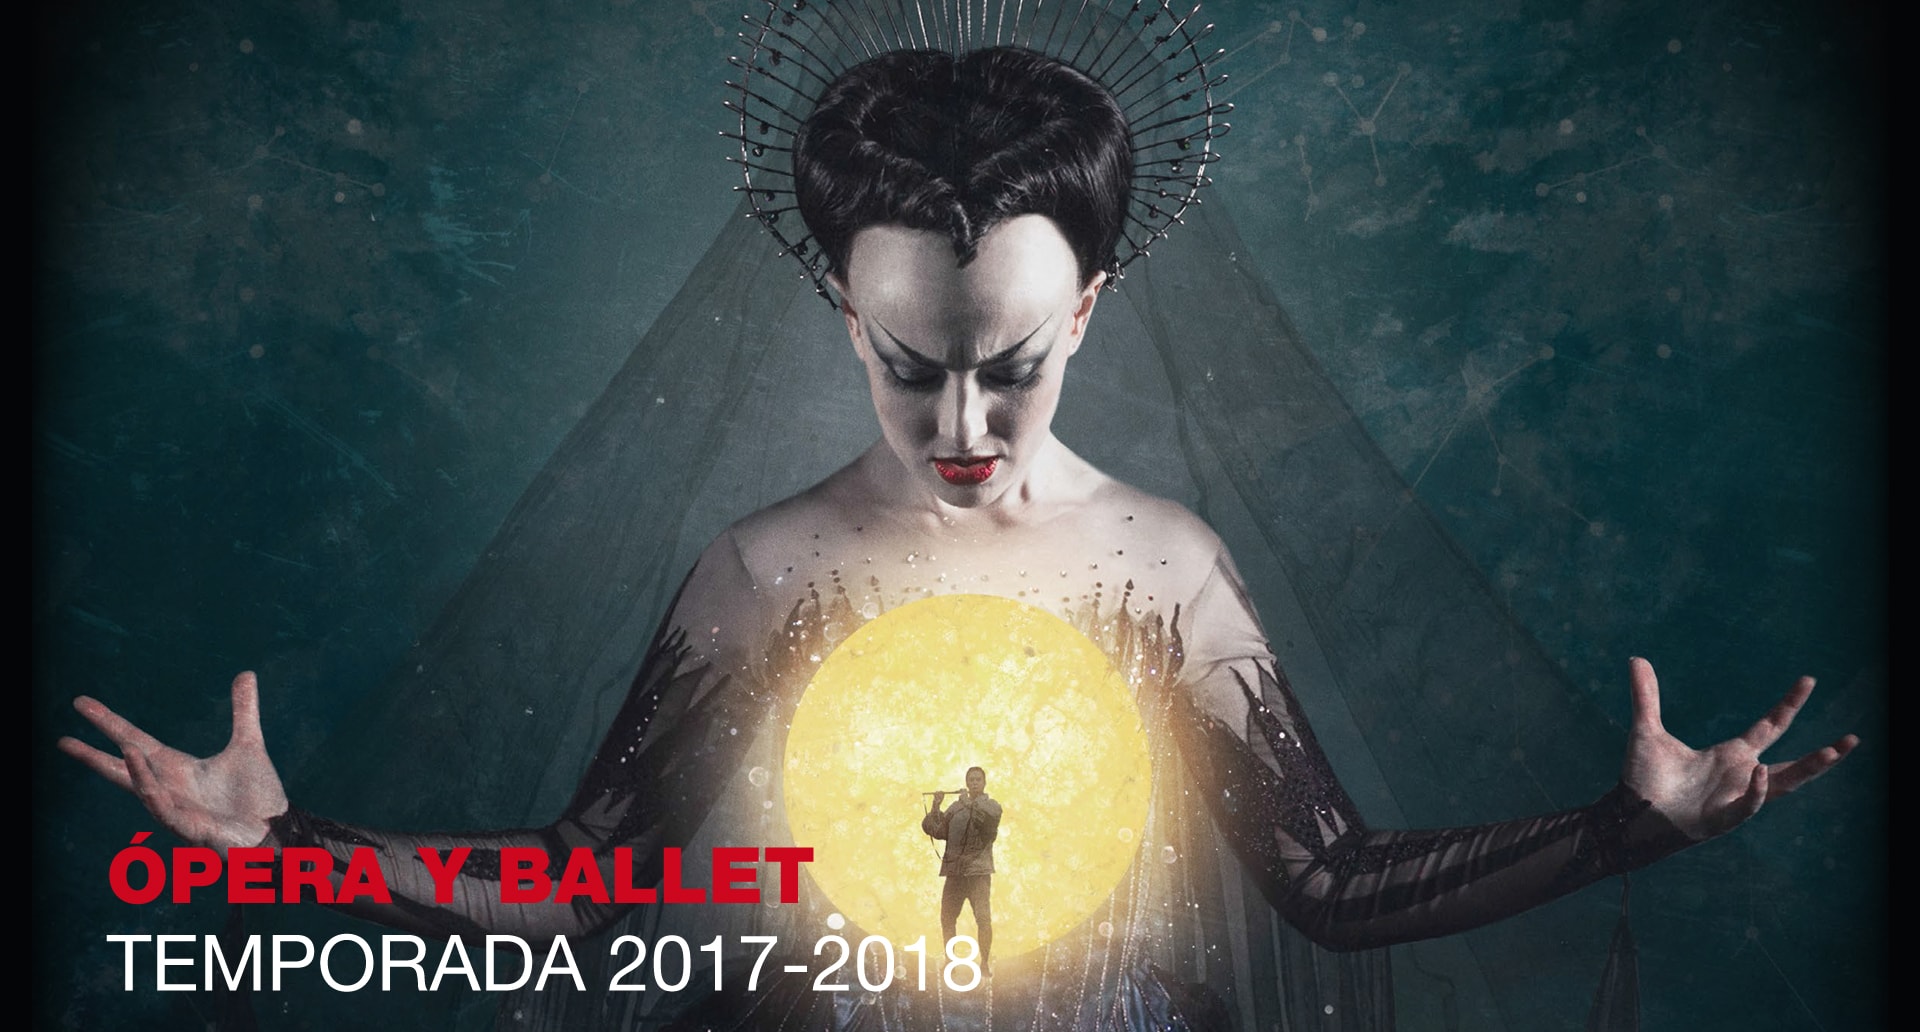 ¡Arranca la temporada de Ópera y Ballet en Cines Gorbeia Zinemak!